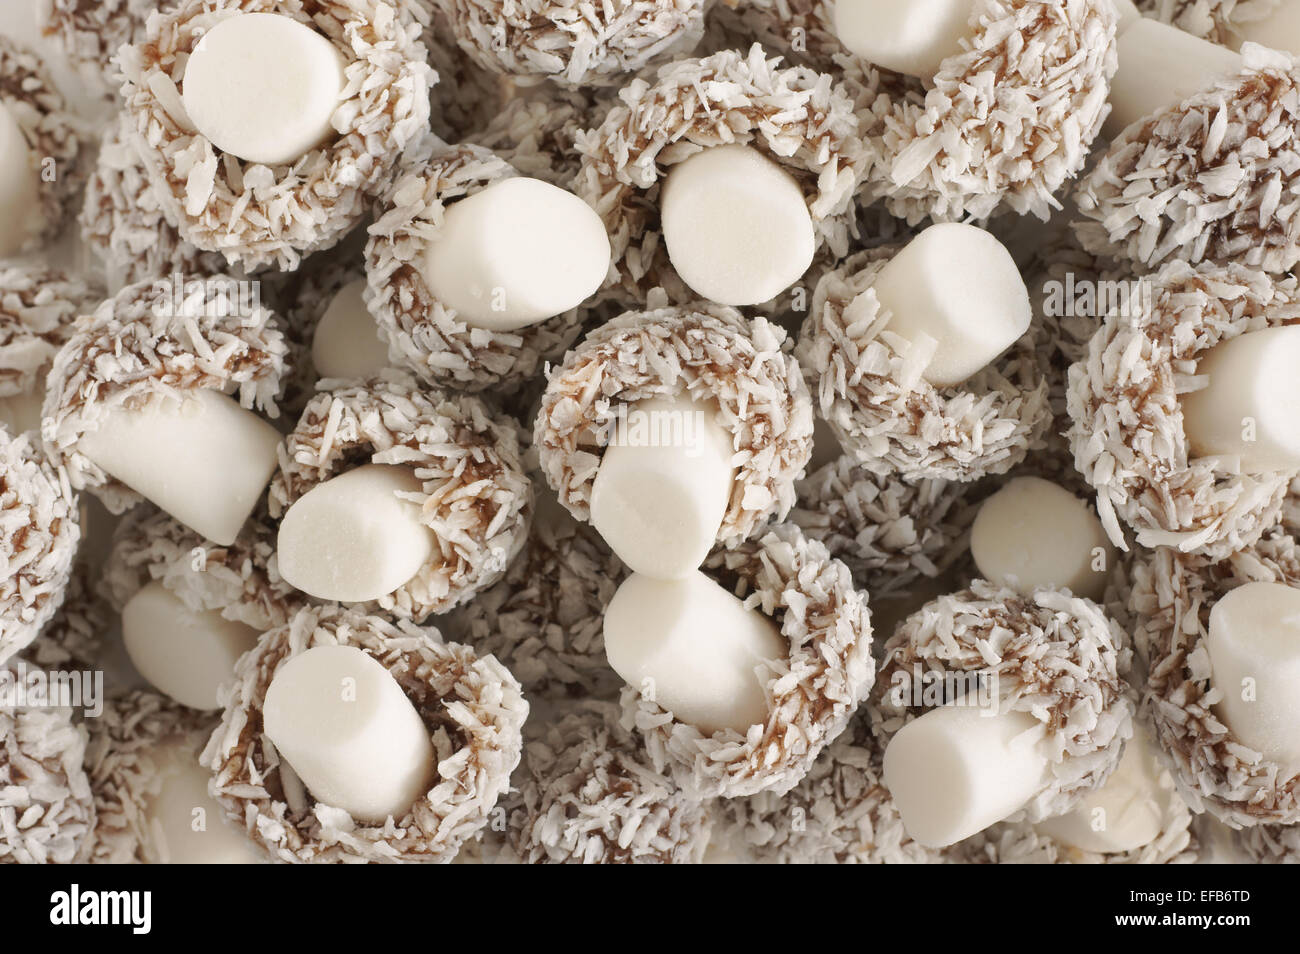 Kokosnuss Pilze Pilz geformt süß mit Dehydriertes Coconut mit einem Stiel Fondant überzogen Stockfoto